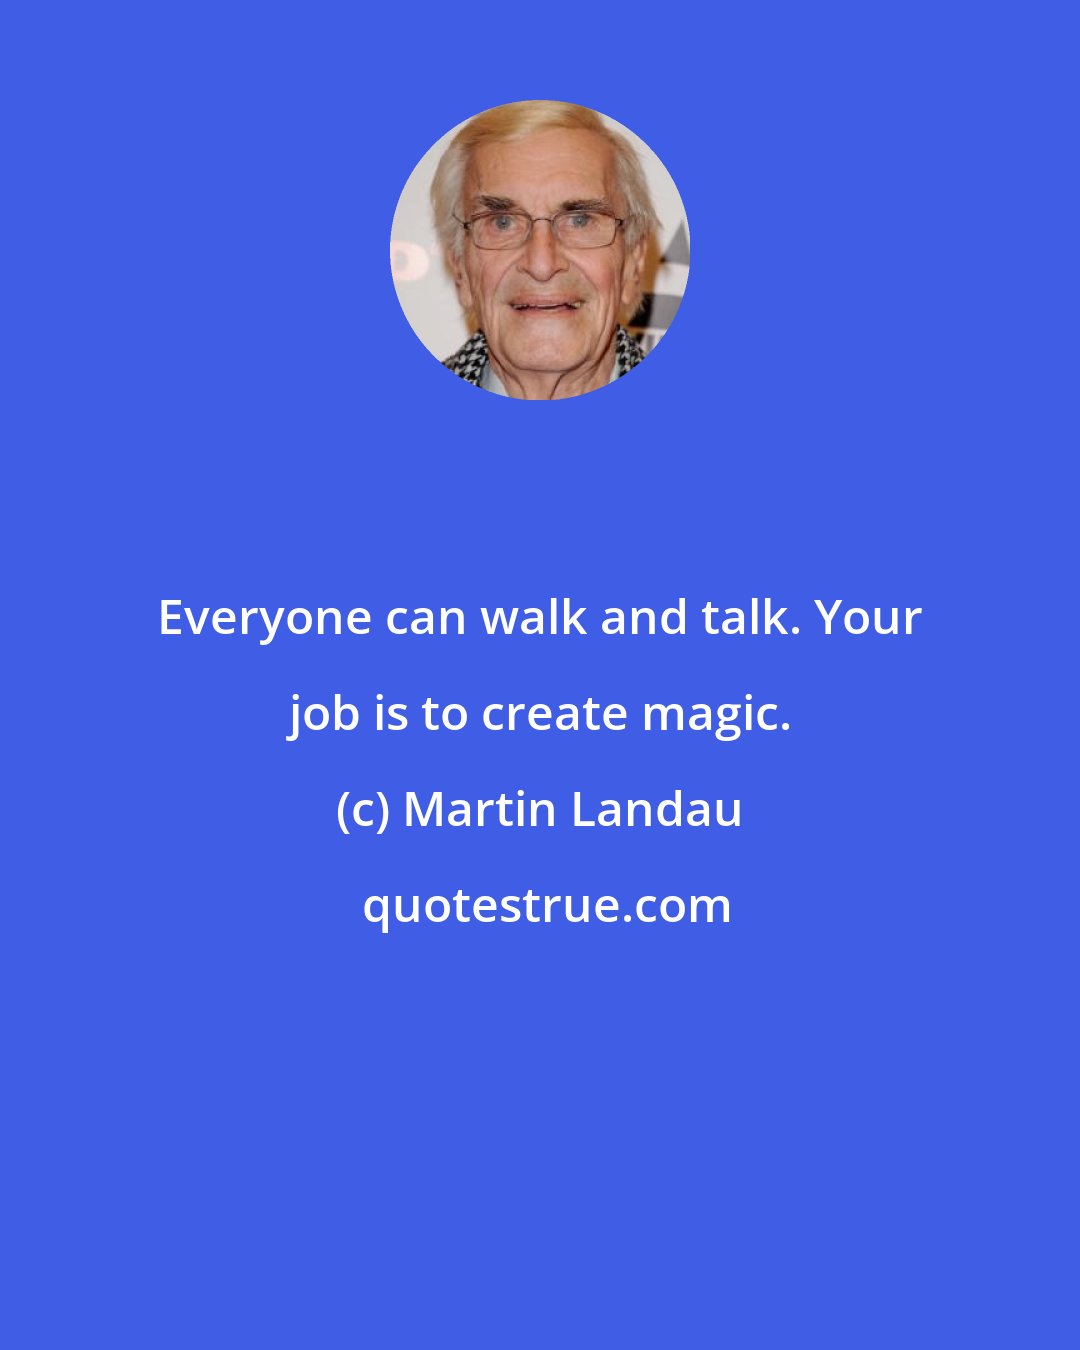 Martin Landau: Everyone can walk and talk. Your job is to create magic.